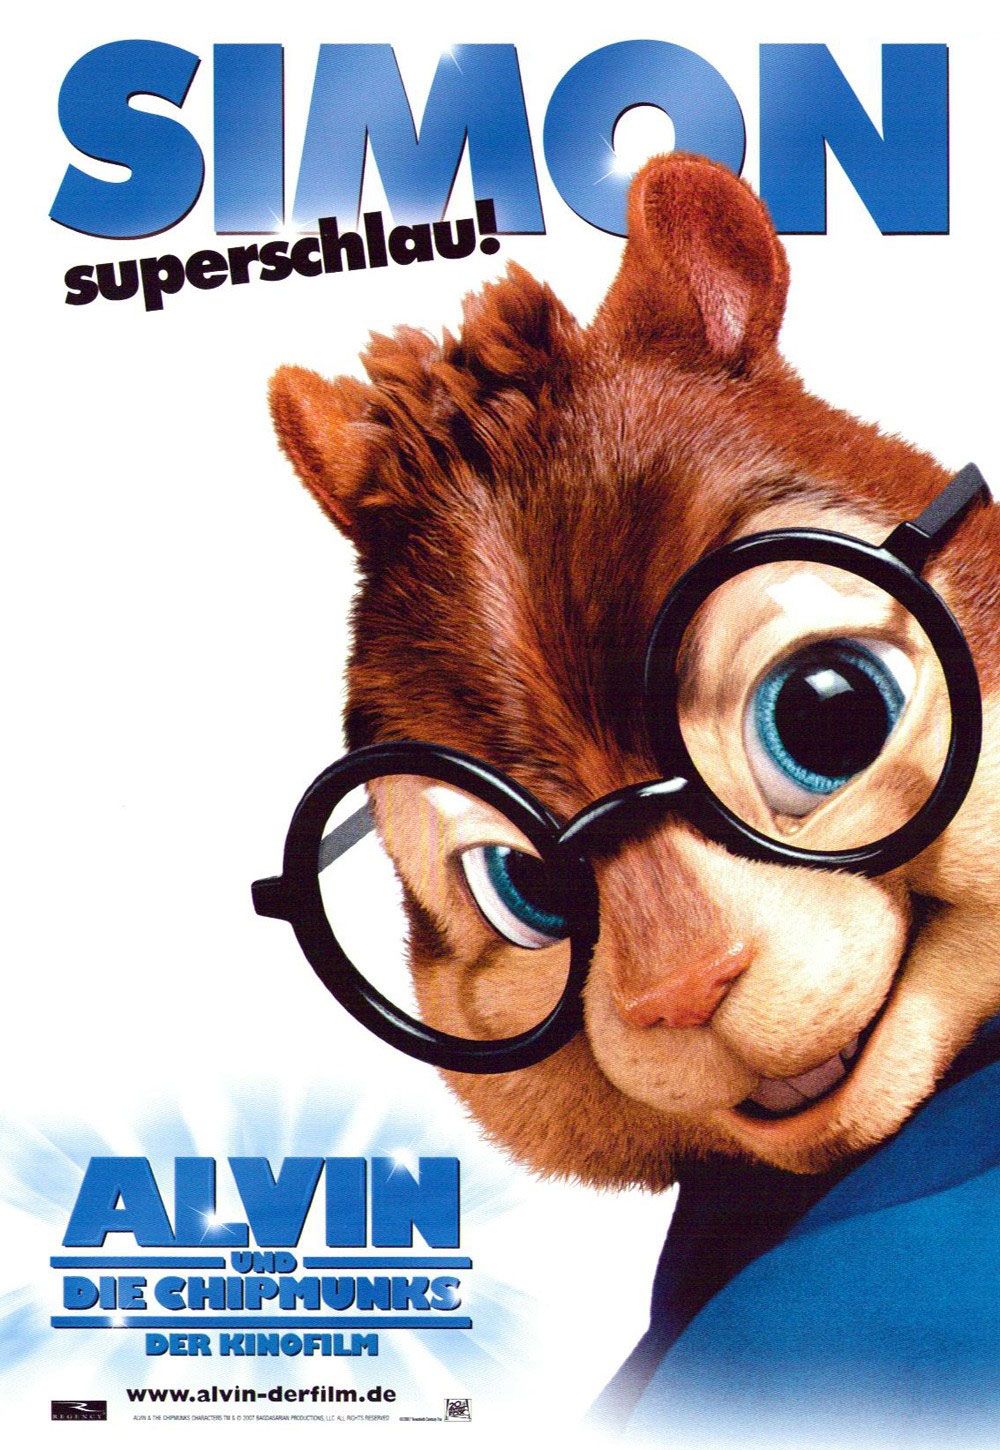 Постеры и кадры: Элвин и бурундуки (2007) Alvin and the Chipmunks.